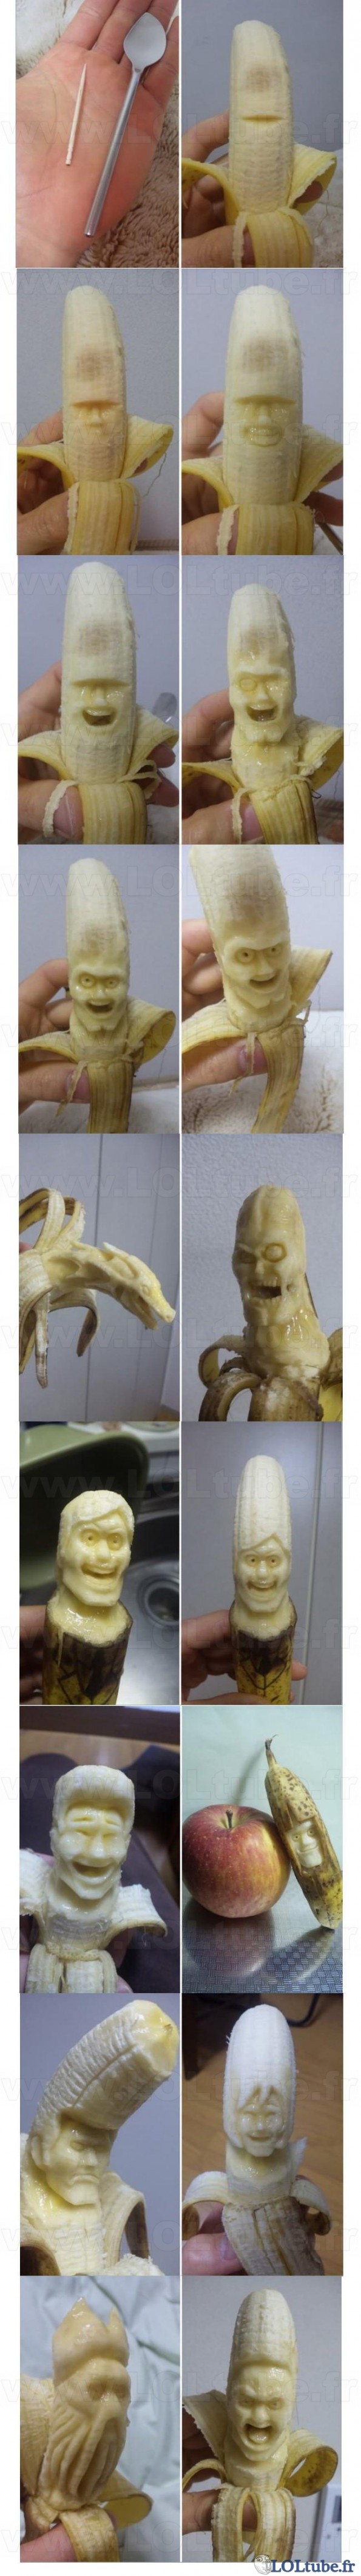 Sculpture sur banane